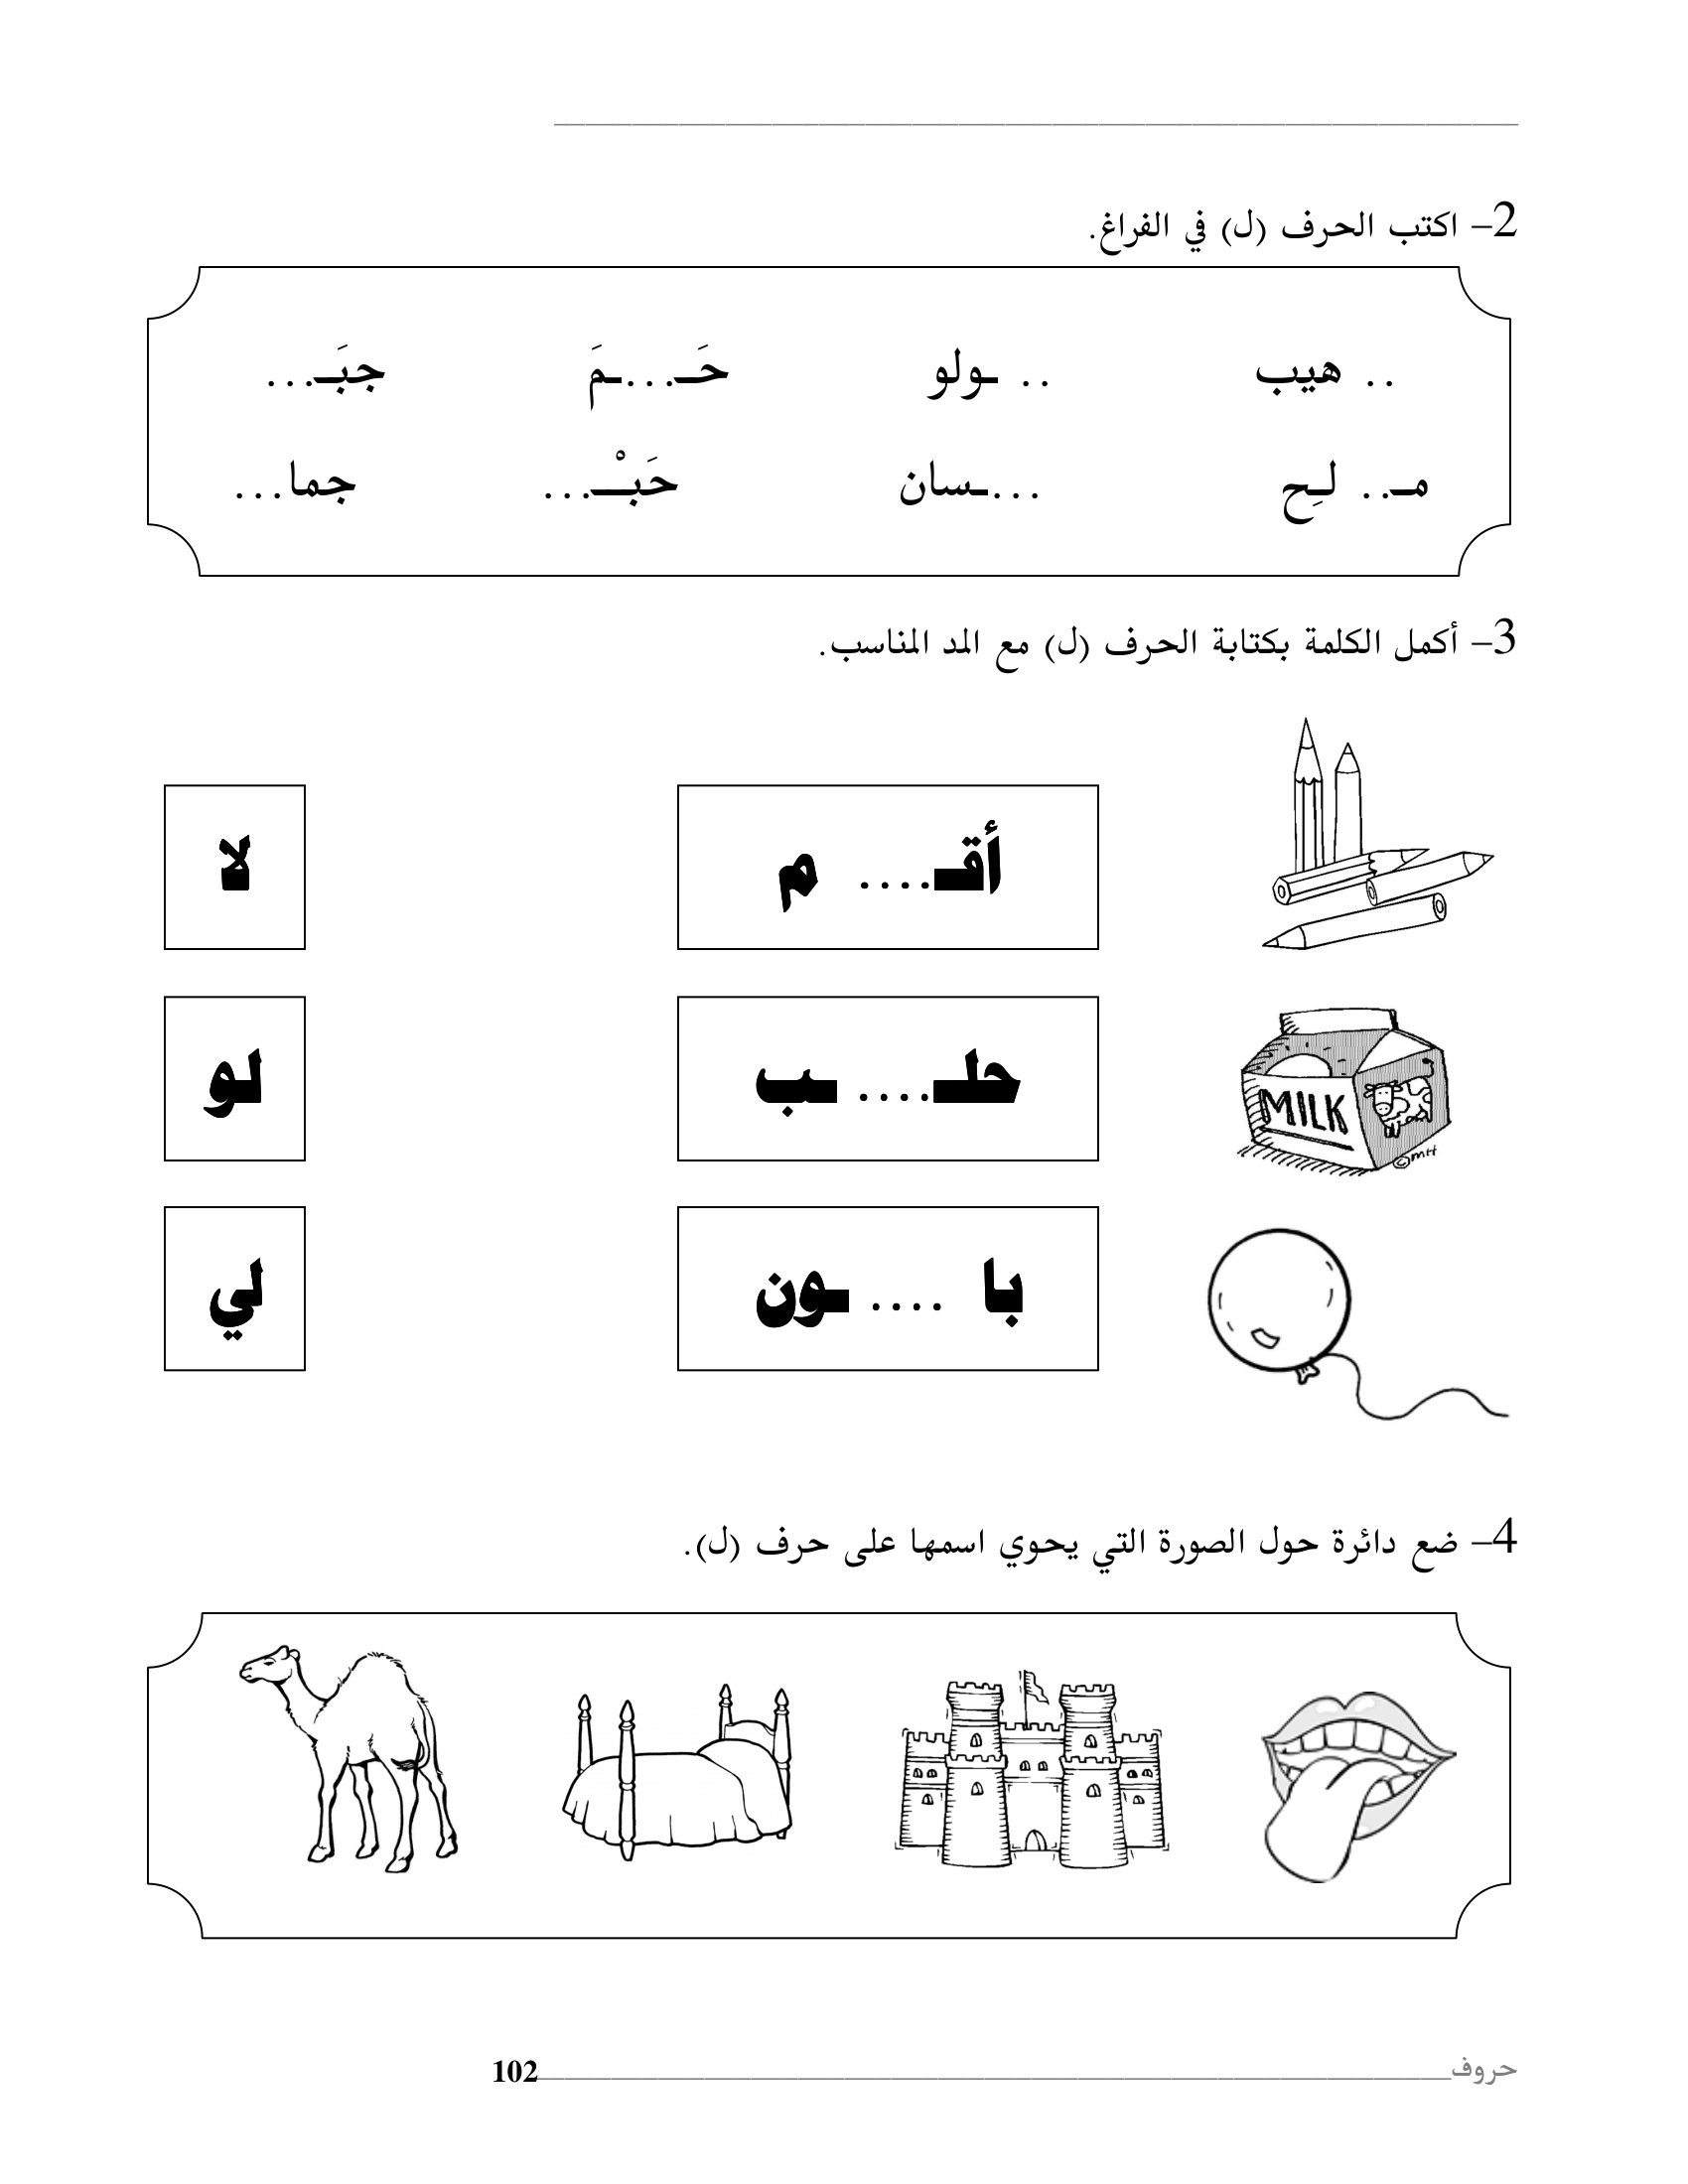 افضل كتاب لتعليم الحروف الهجائية العربية روعة pdf تحميل مباشر